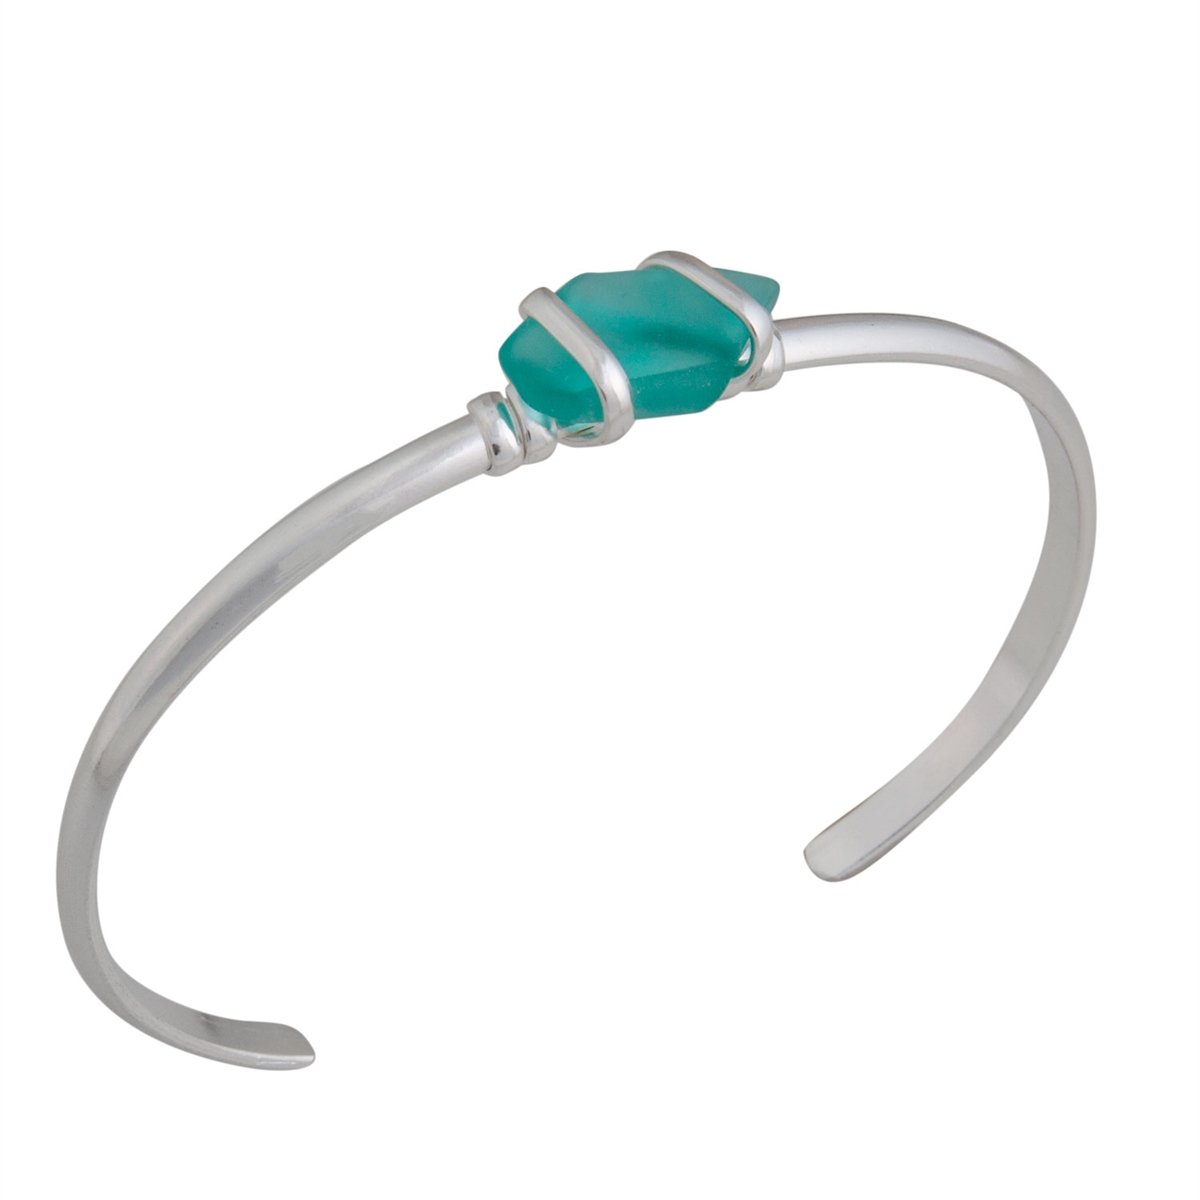 Charles Albert Jewelry - Mint Pompano Beach Glass Mini Cuff - Side View